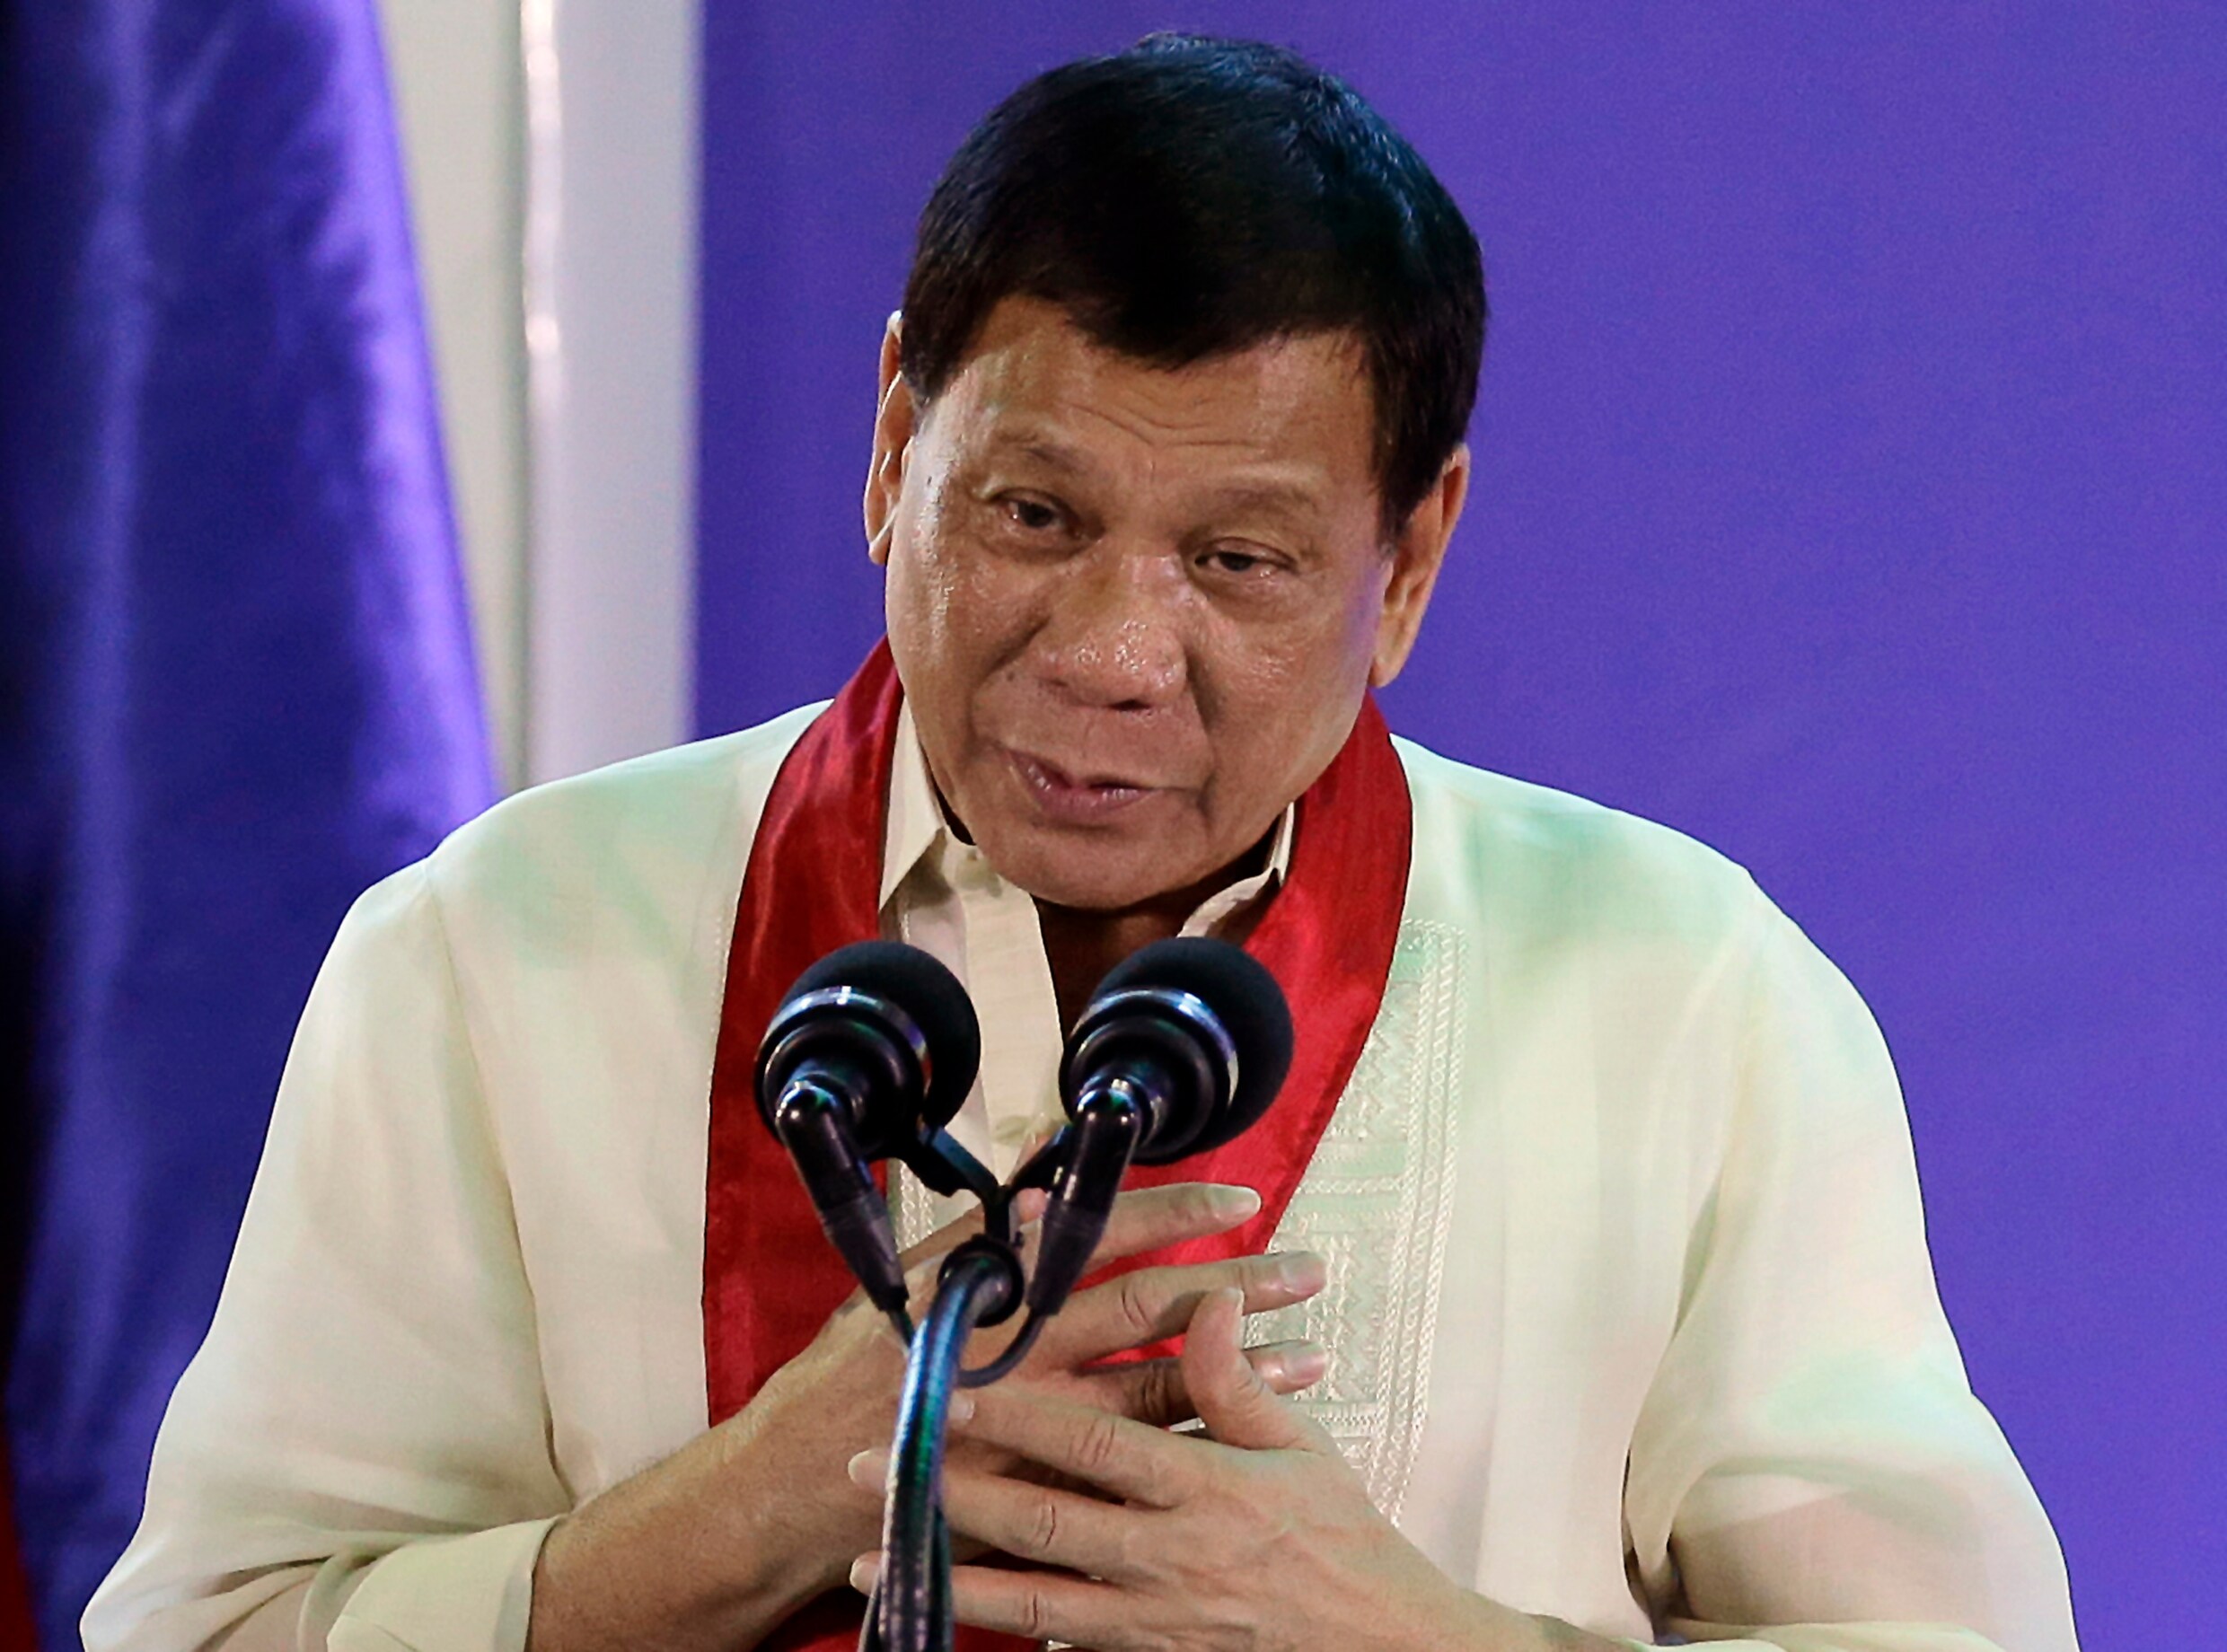 Filipijnse president Duterte wil dochter als opvolger